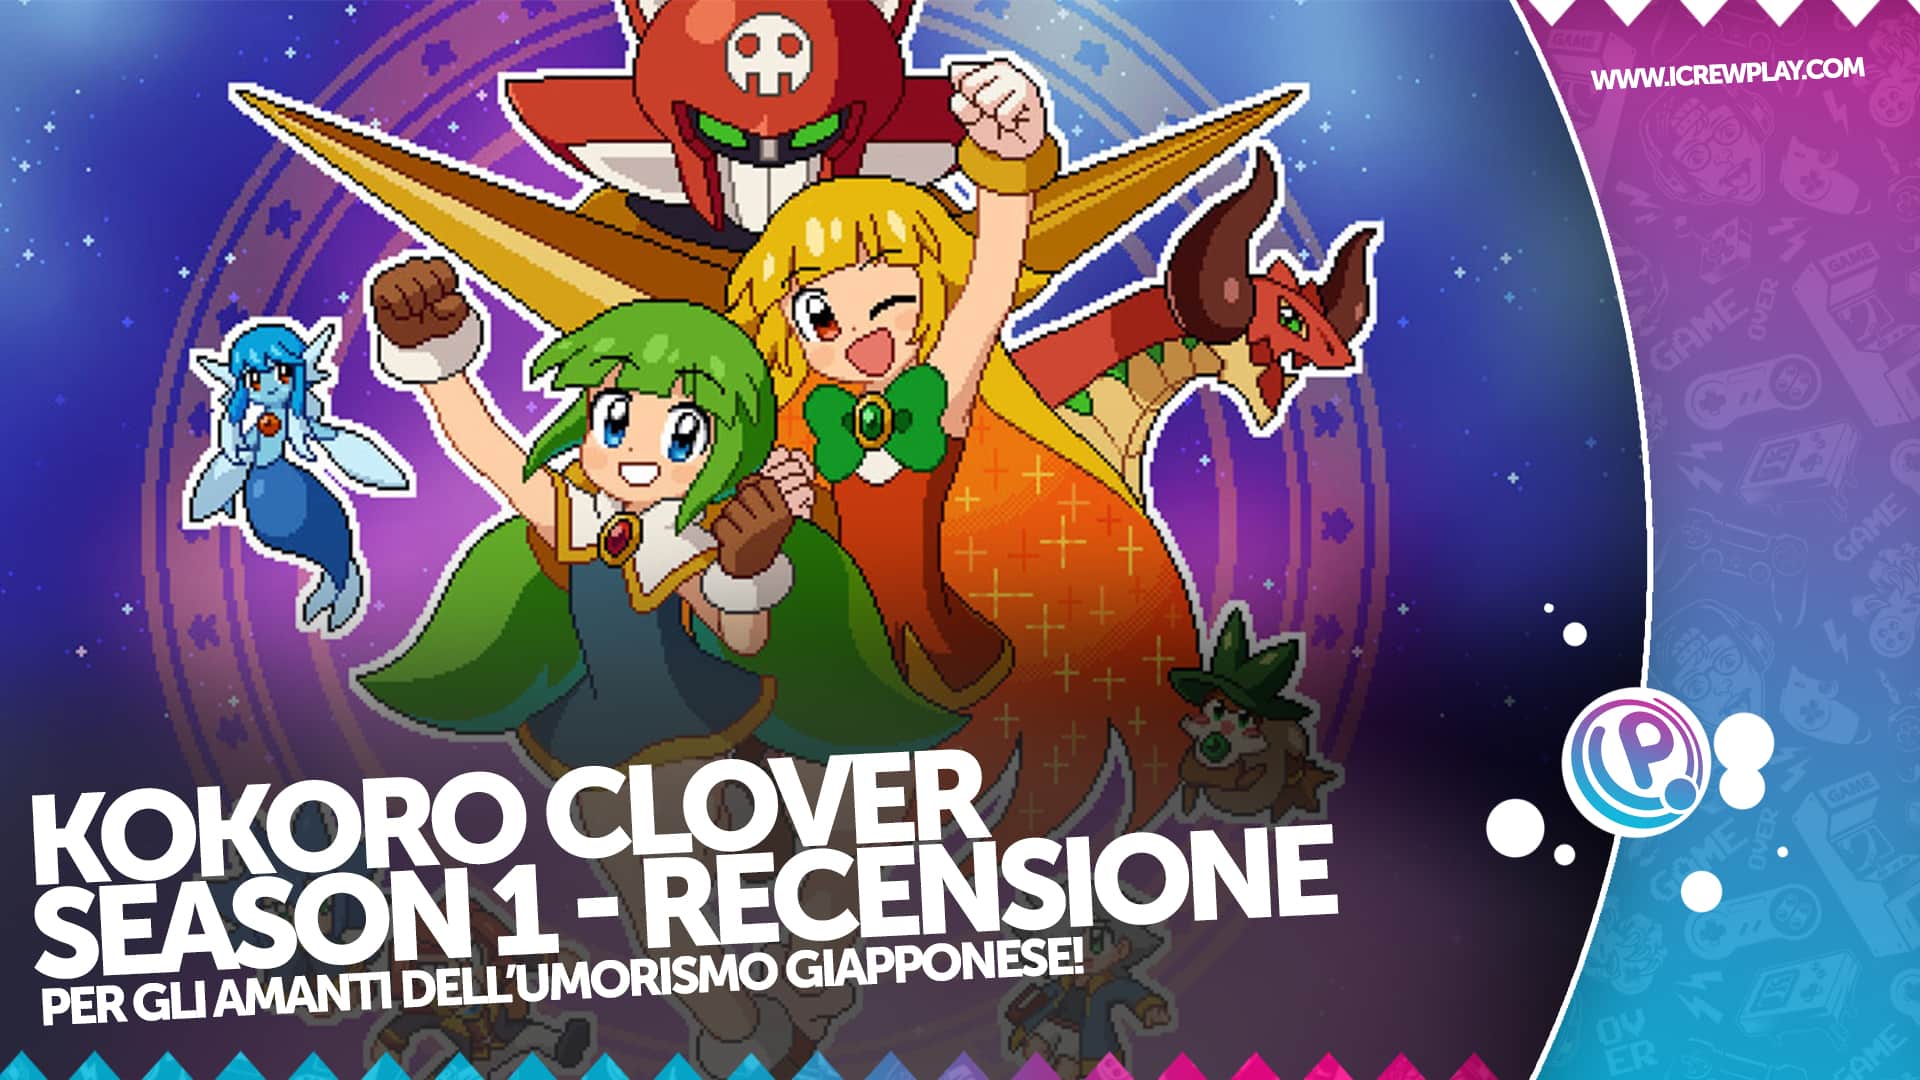 Kokoro Clover Season 1 - Recensione per Nintendo Switch 4